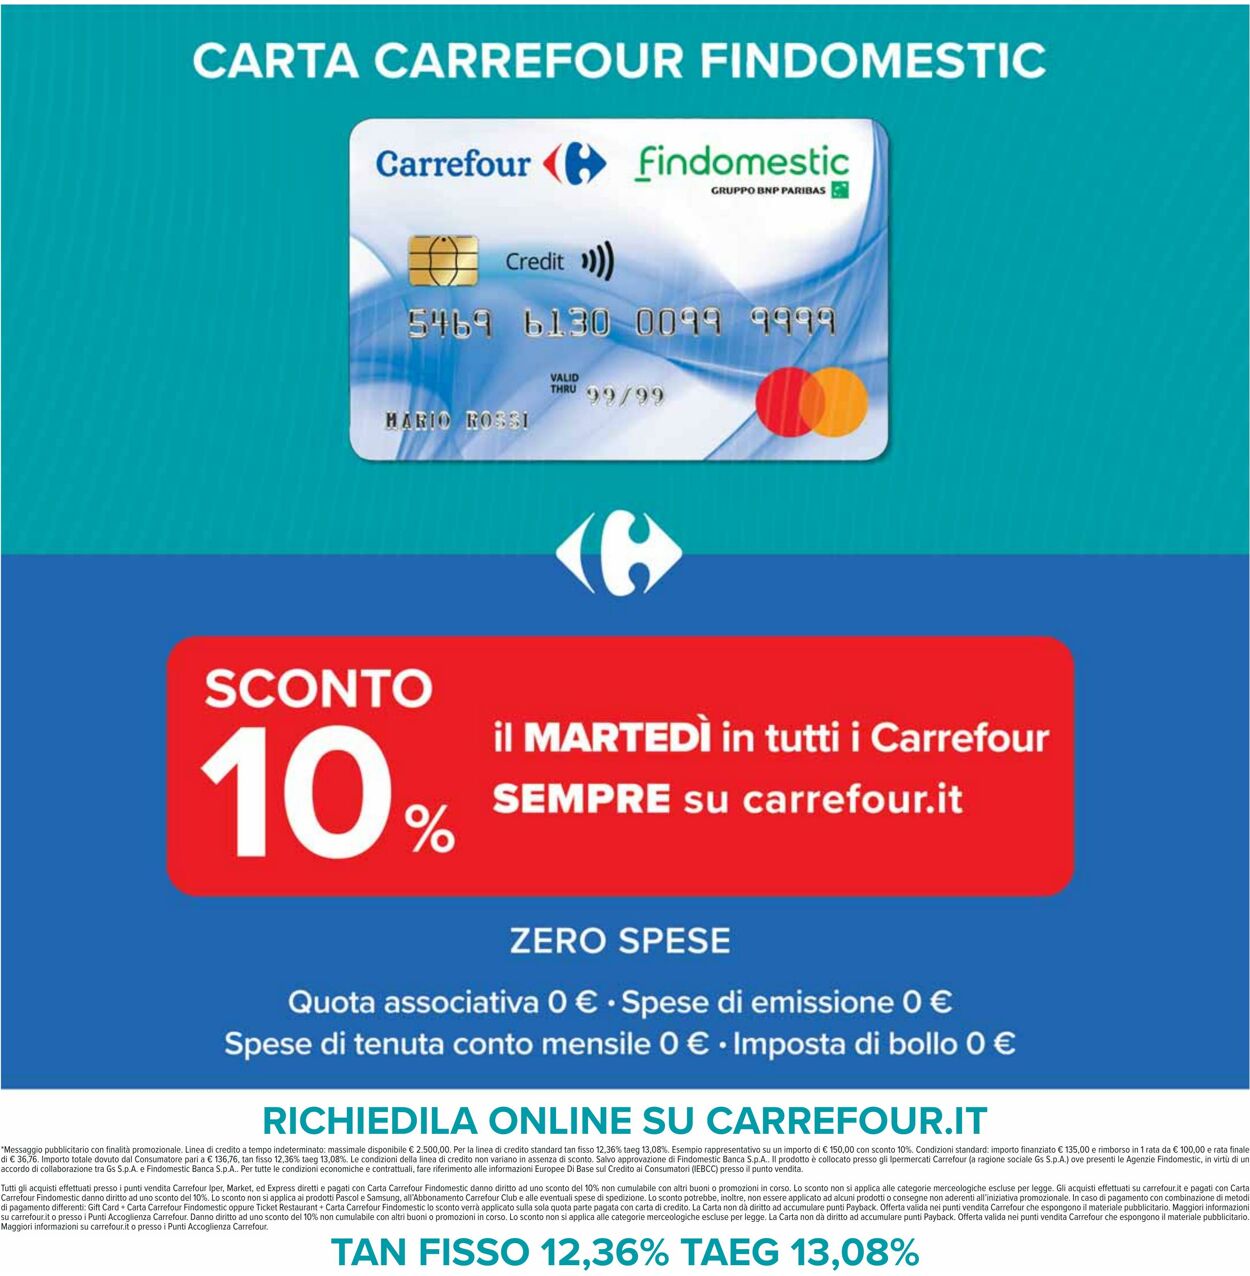 Volantino Carrefour 07.11.2022 - 16.11.2022